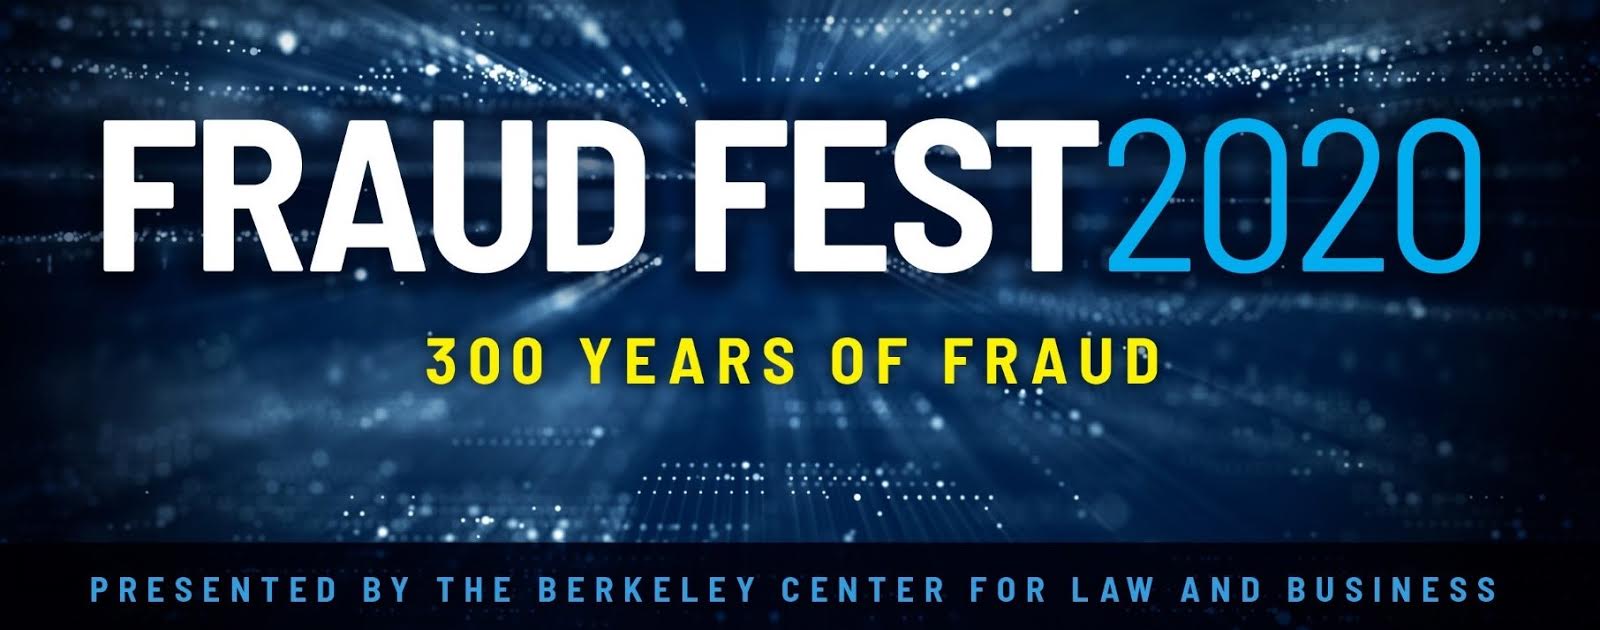 fraudfest-banner